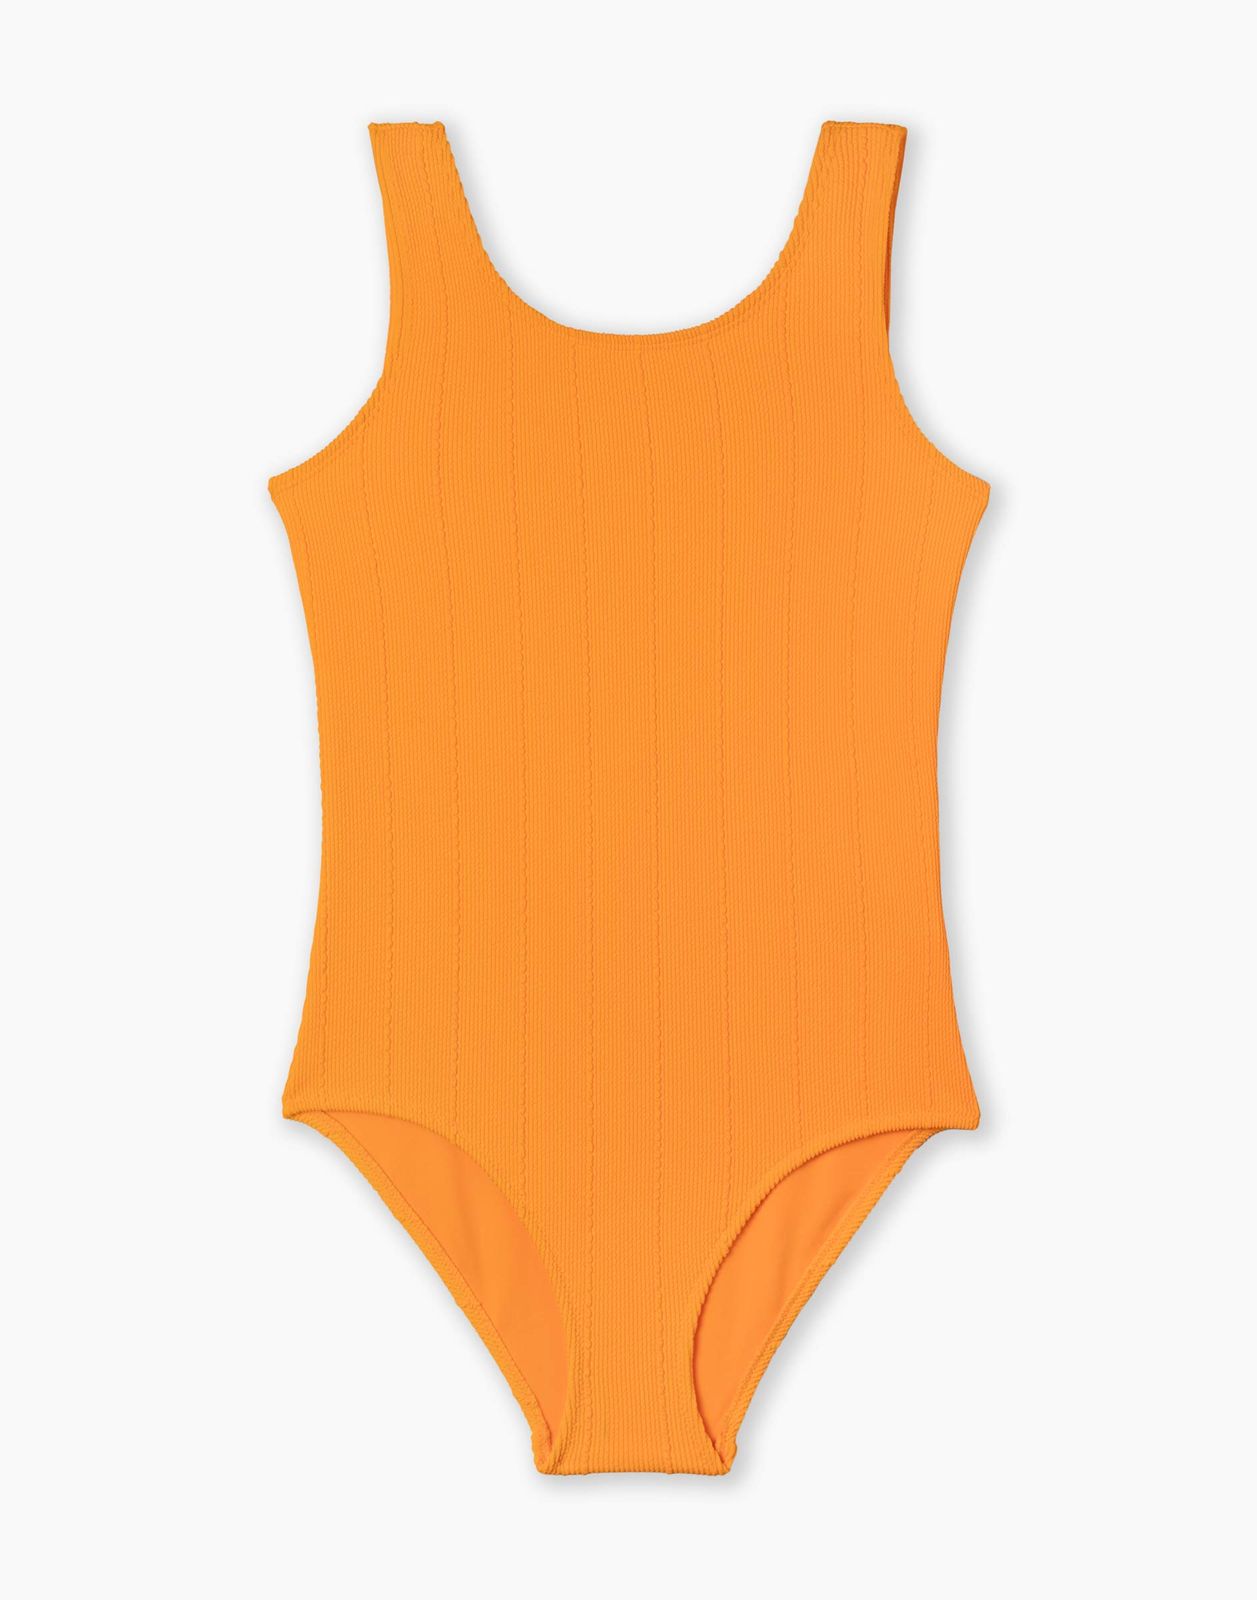 Слитный купальник для девочки Gloria Jeans GSM001671 оранжевый 8-10л/140